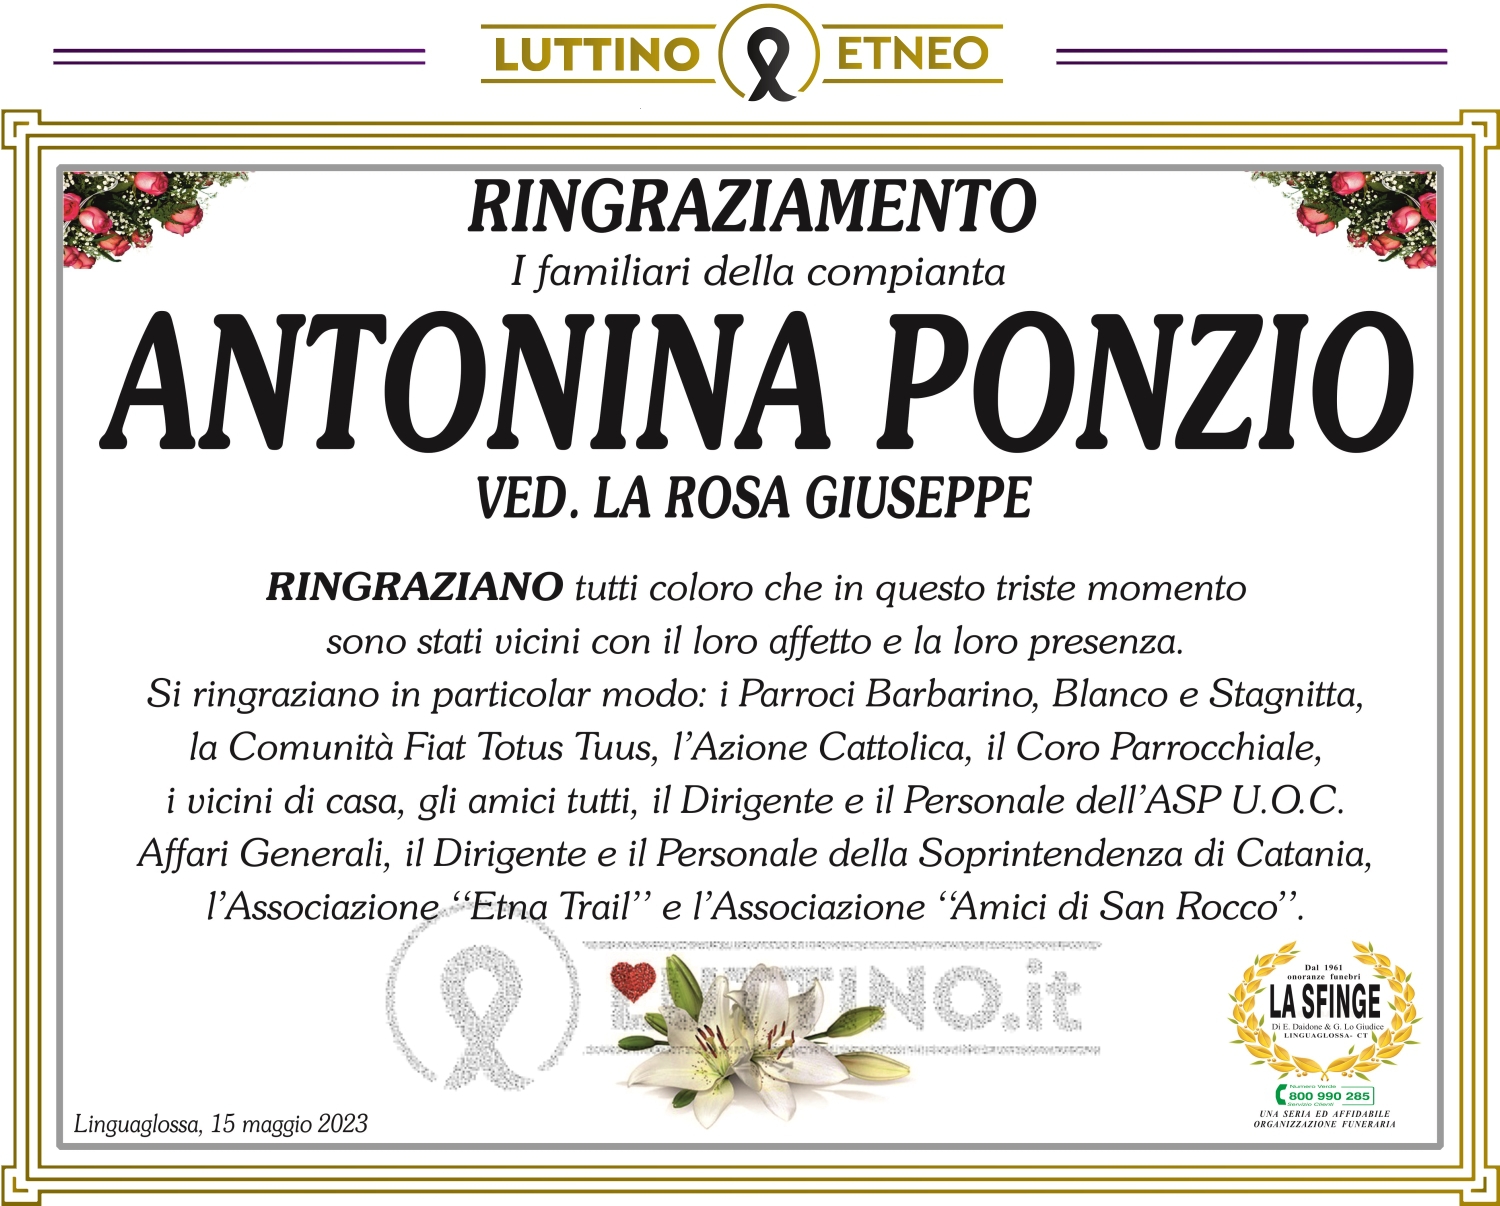 Antonina Ponzio